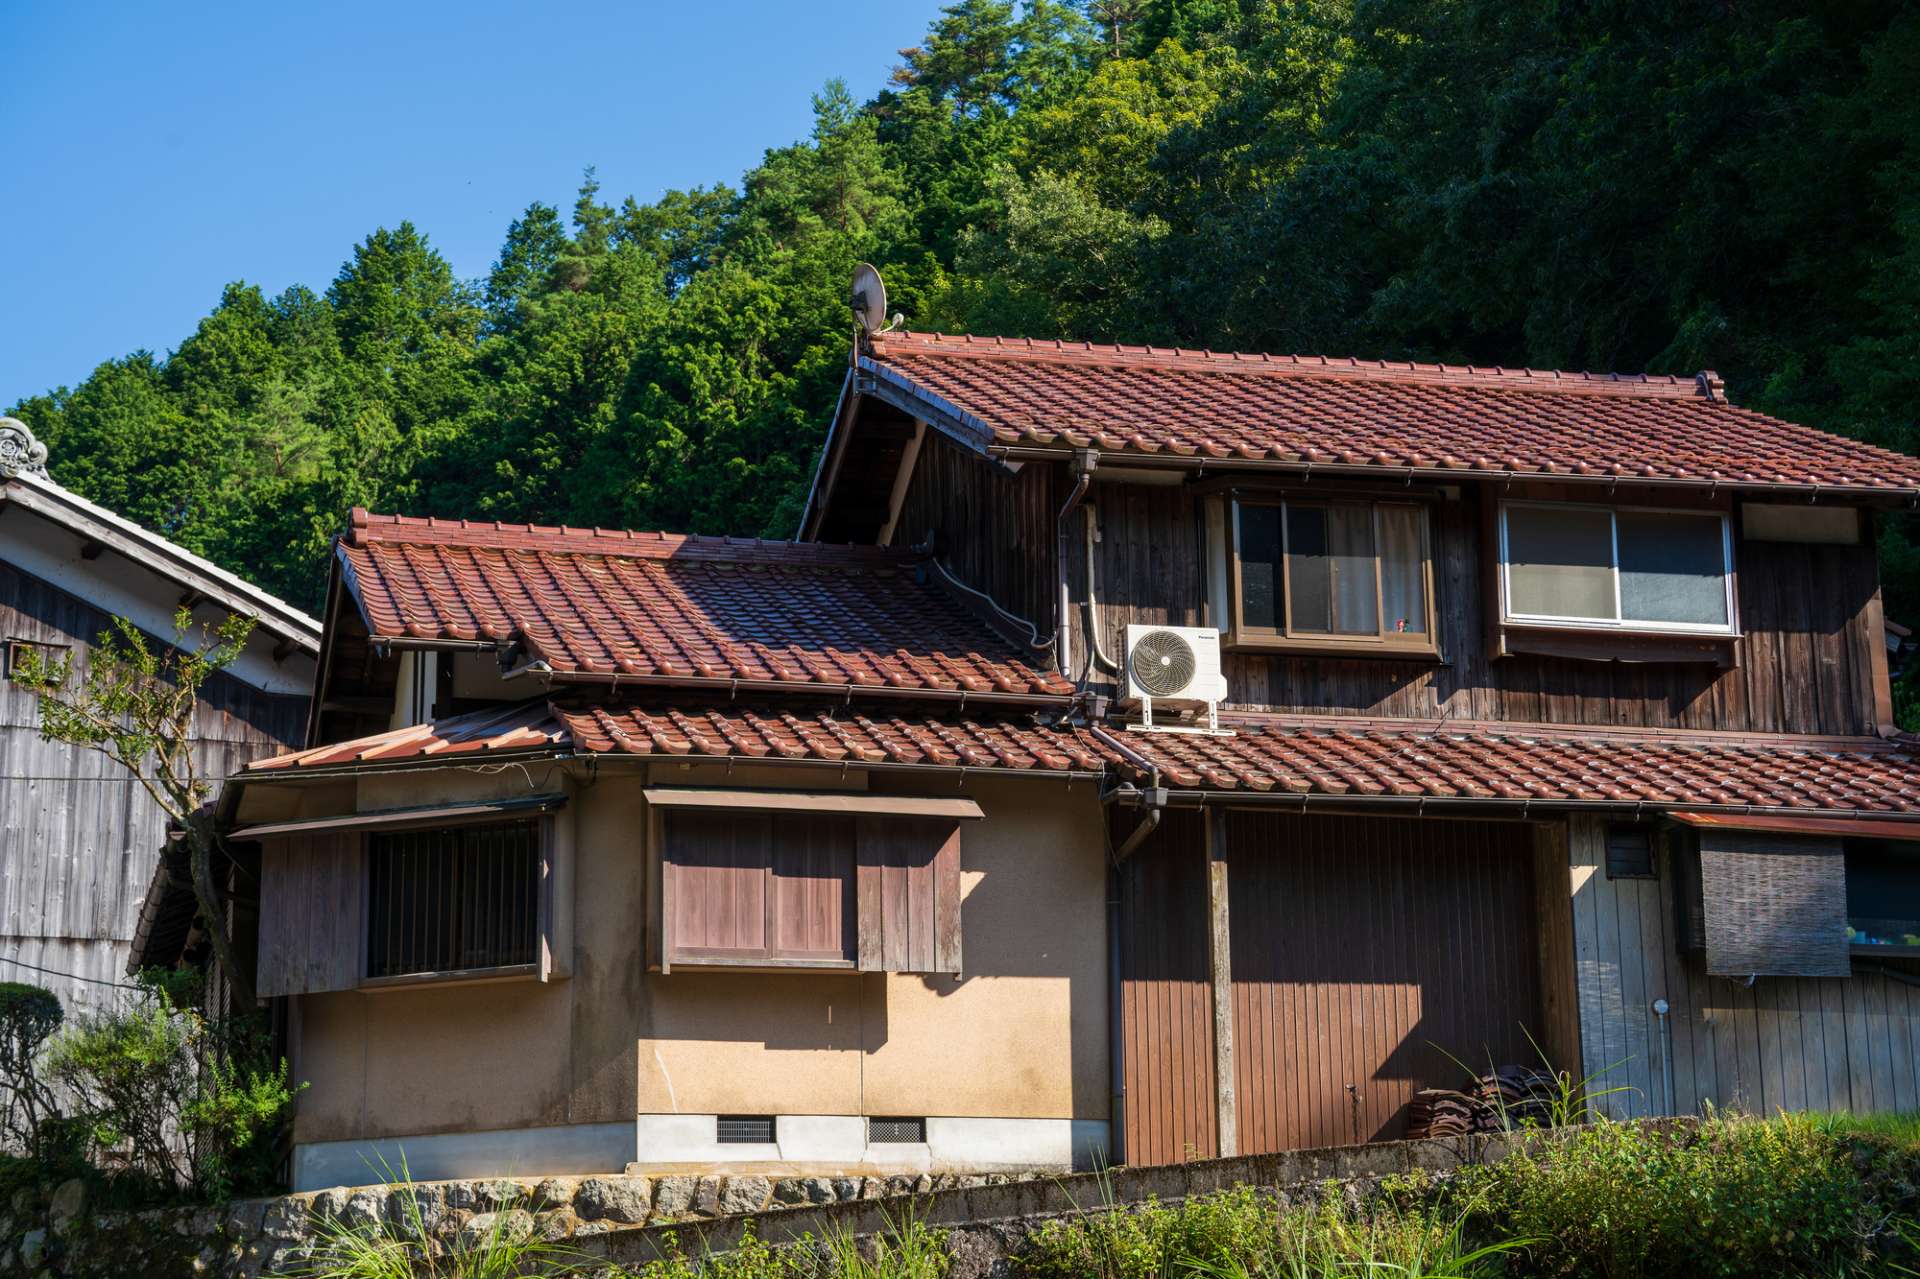 有用な空き家の再利用方法を奈良近隣の皆様にご提案します